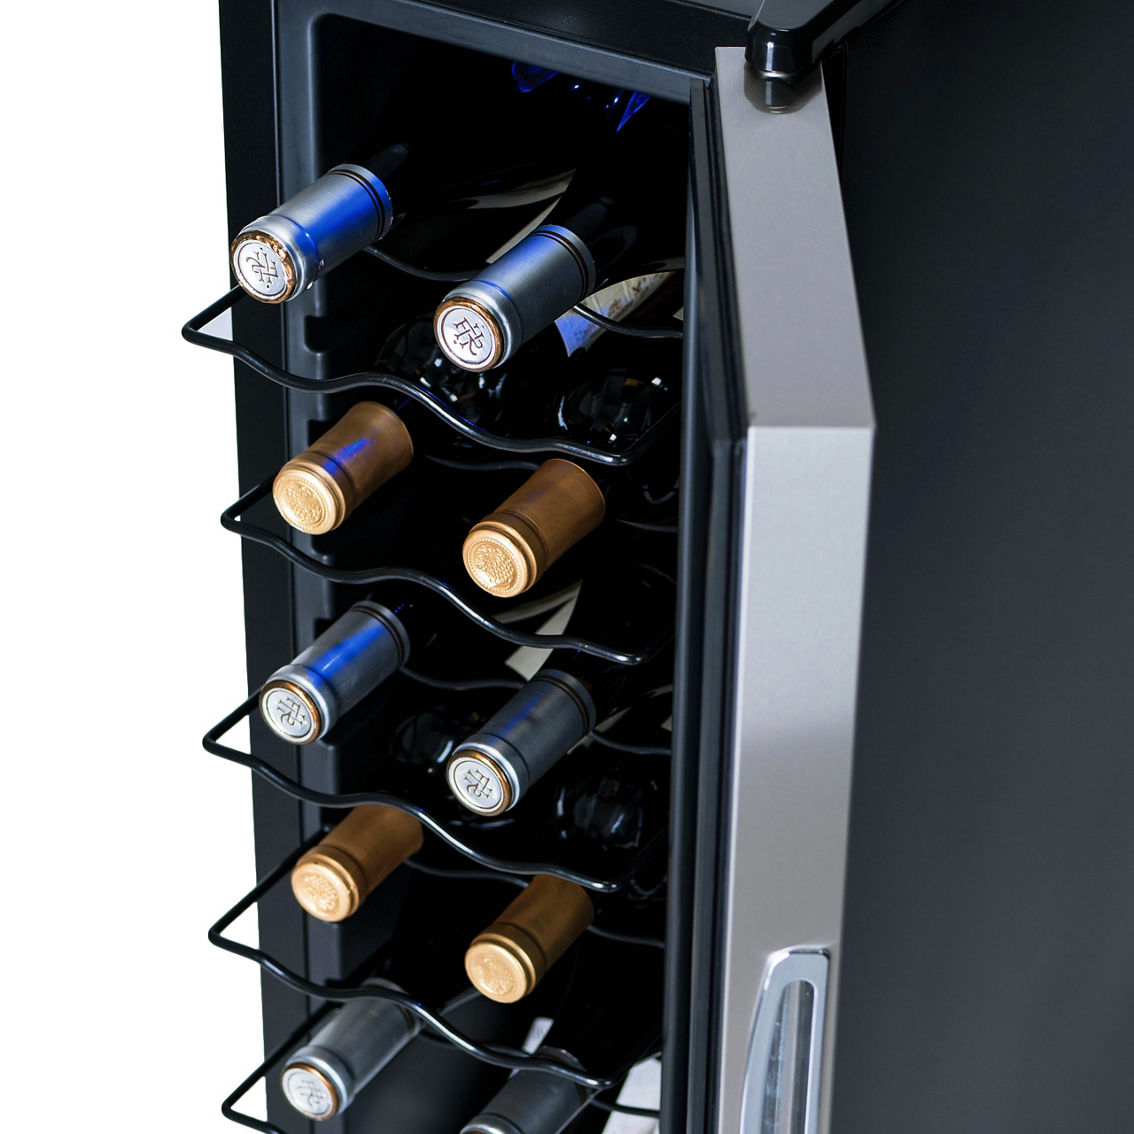 NewAir 12 Bottle Wine Cooler Refrigerator - Image 4 of 9